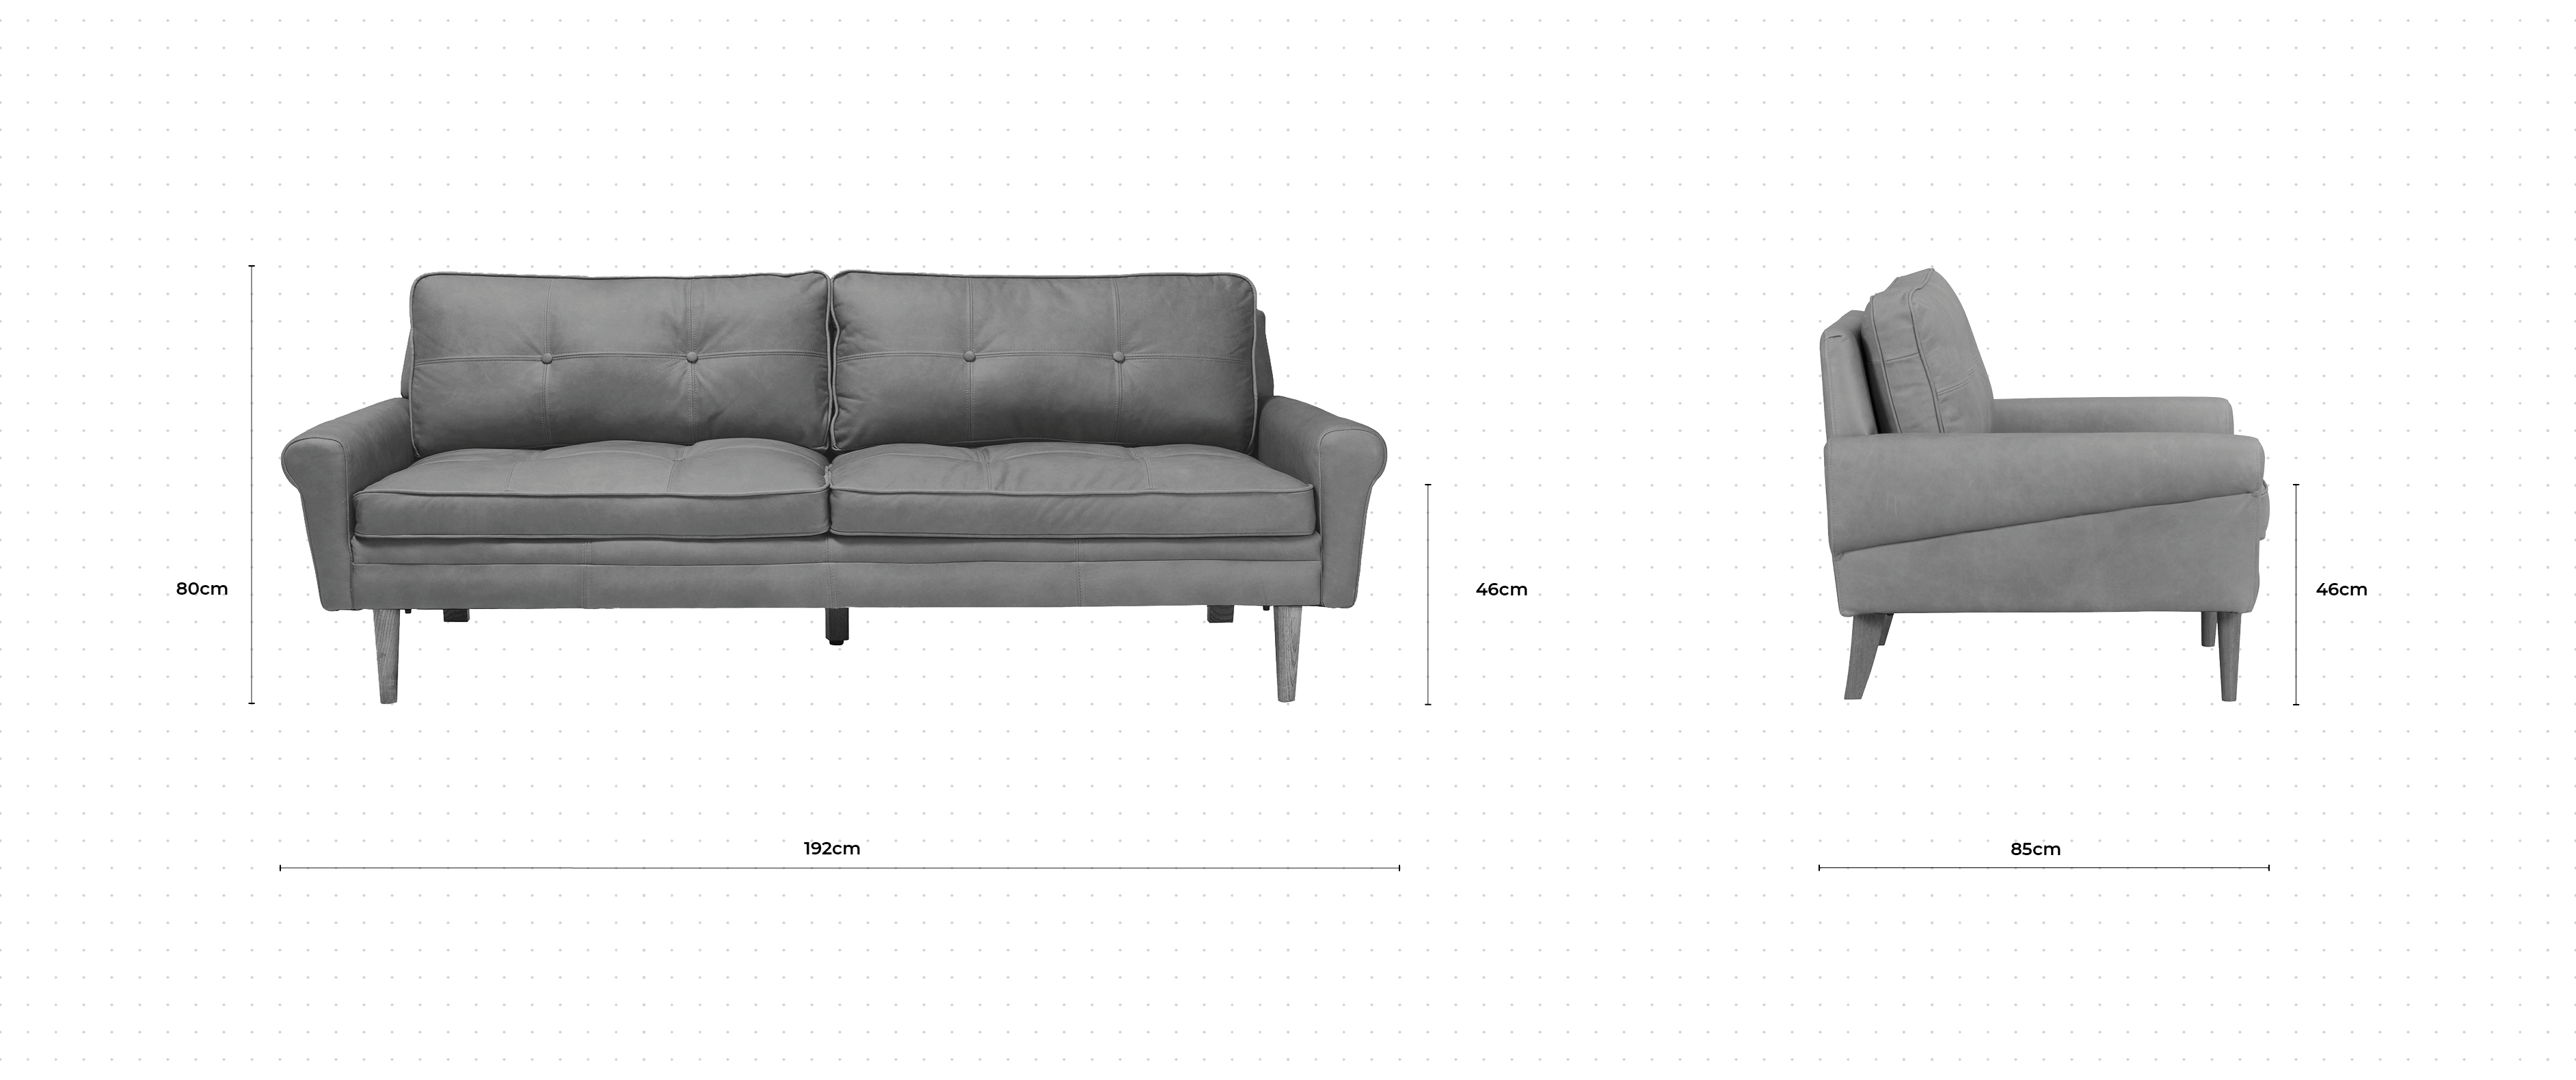 Banks 3 Seater Sofa dimensions